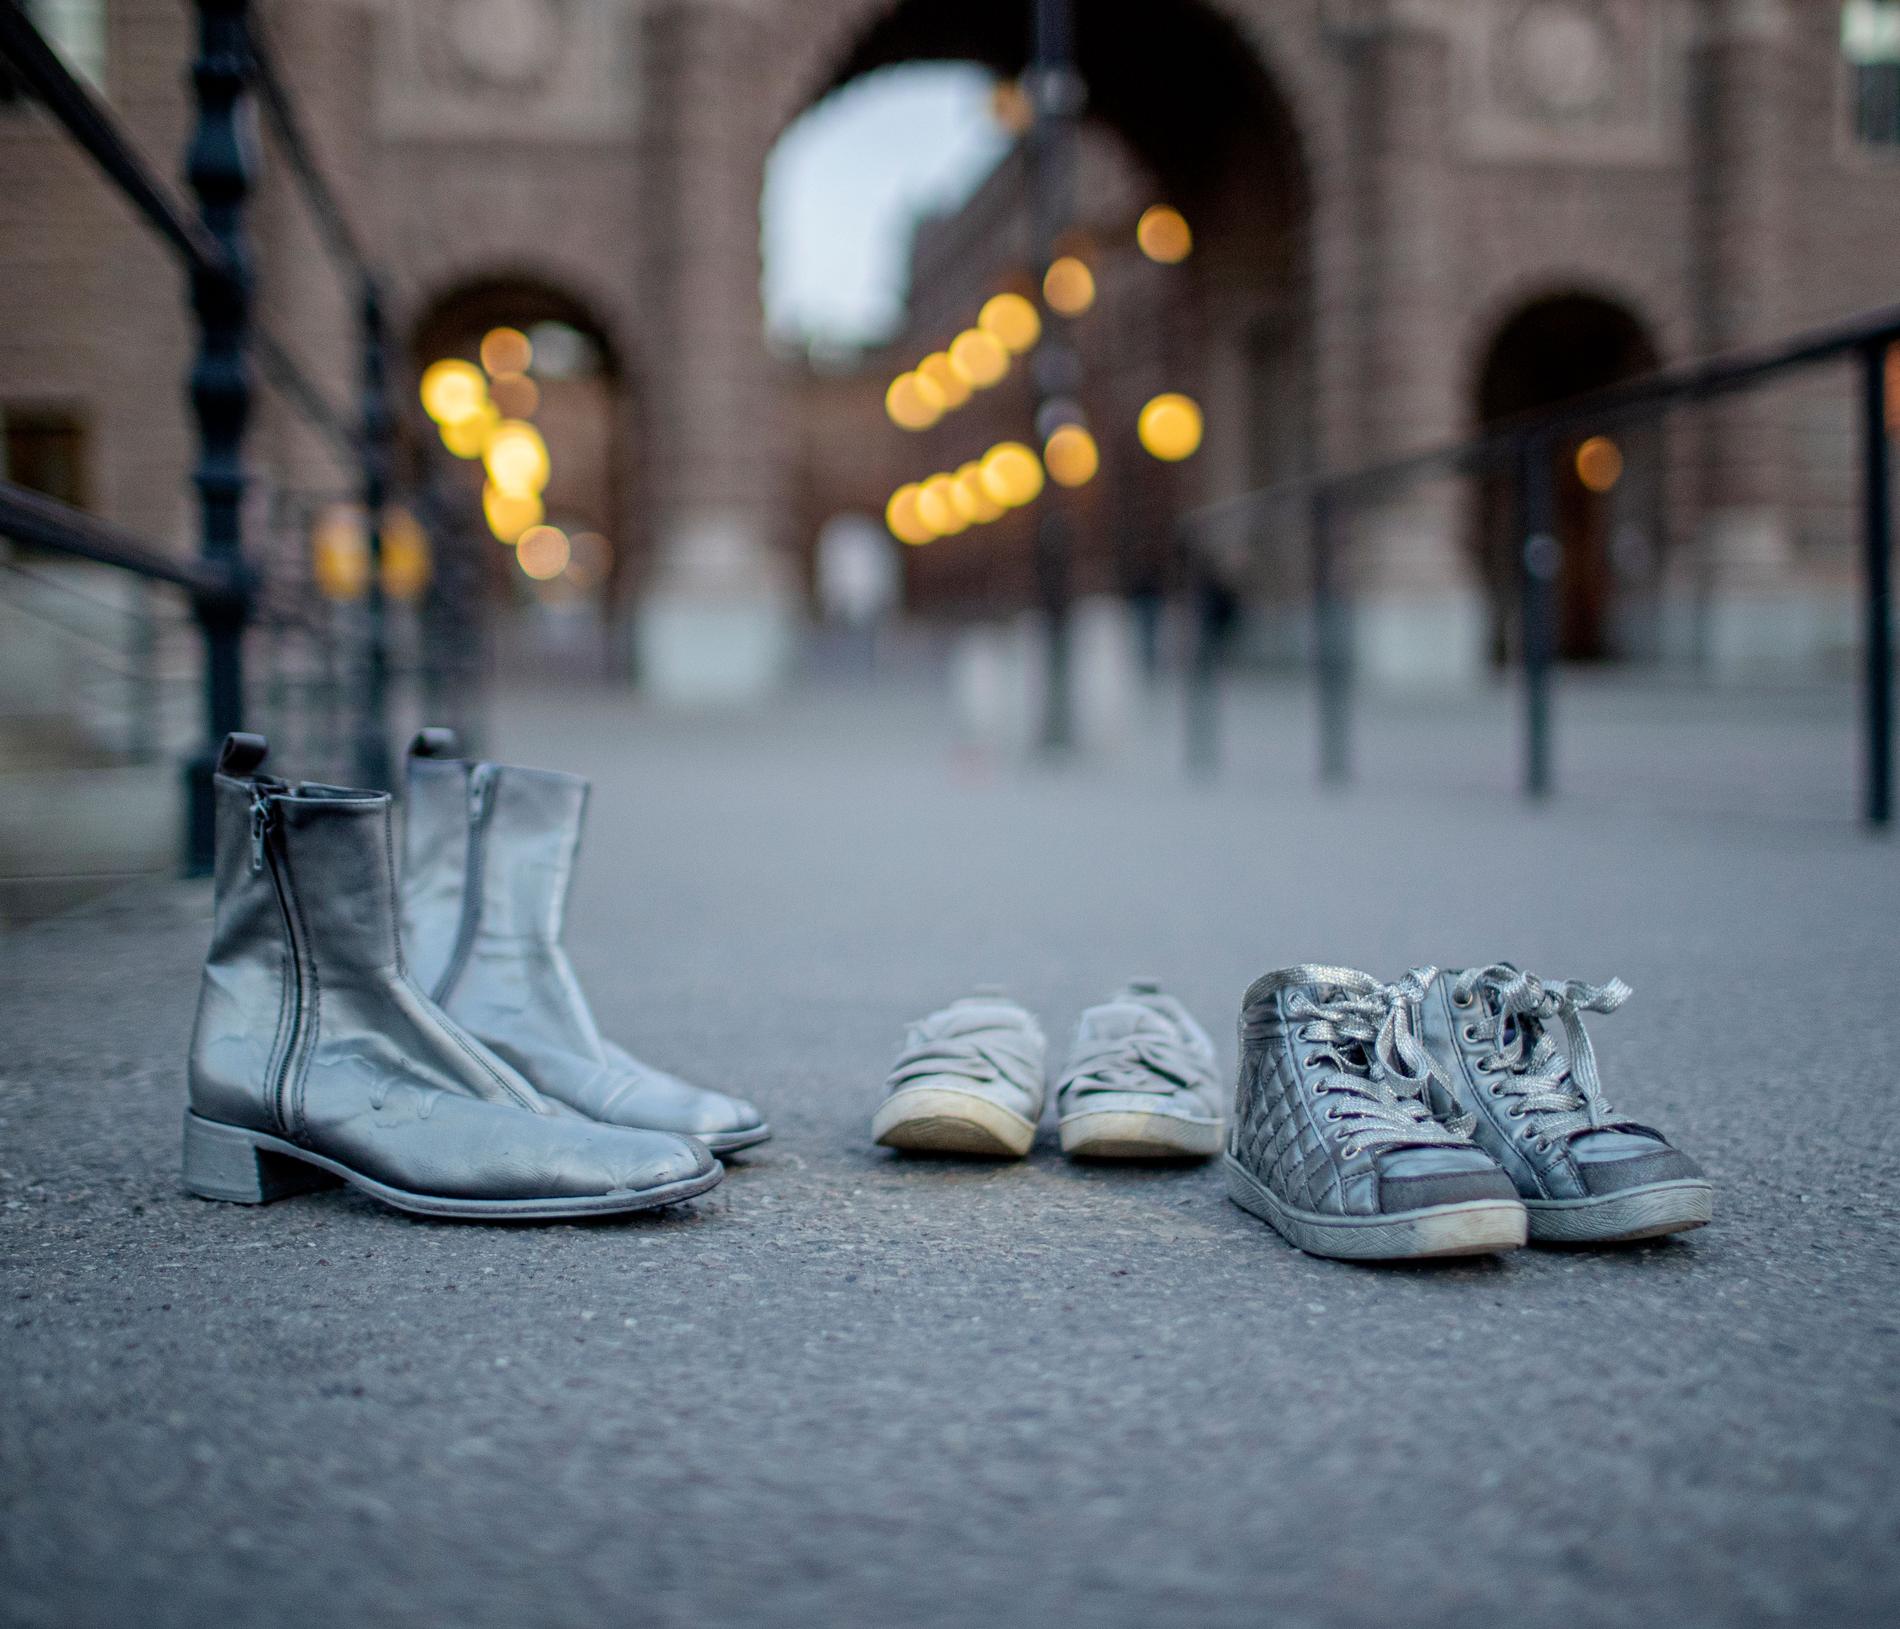 Ett hemligt fotfolk. De slitna skorna är symbolen de gömda kvinnorna valt för sina aktioner. De ska föra tankarna till en osynlig befolkning, som finns men inte får synas.